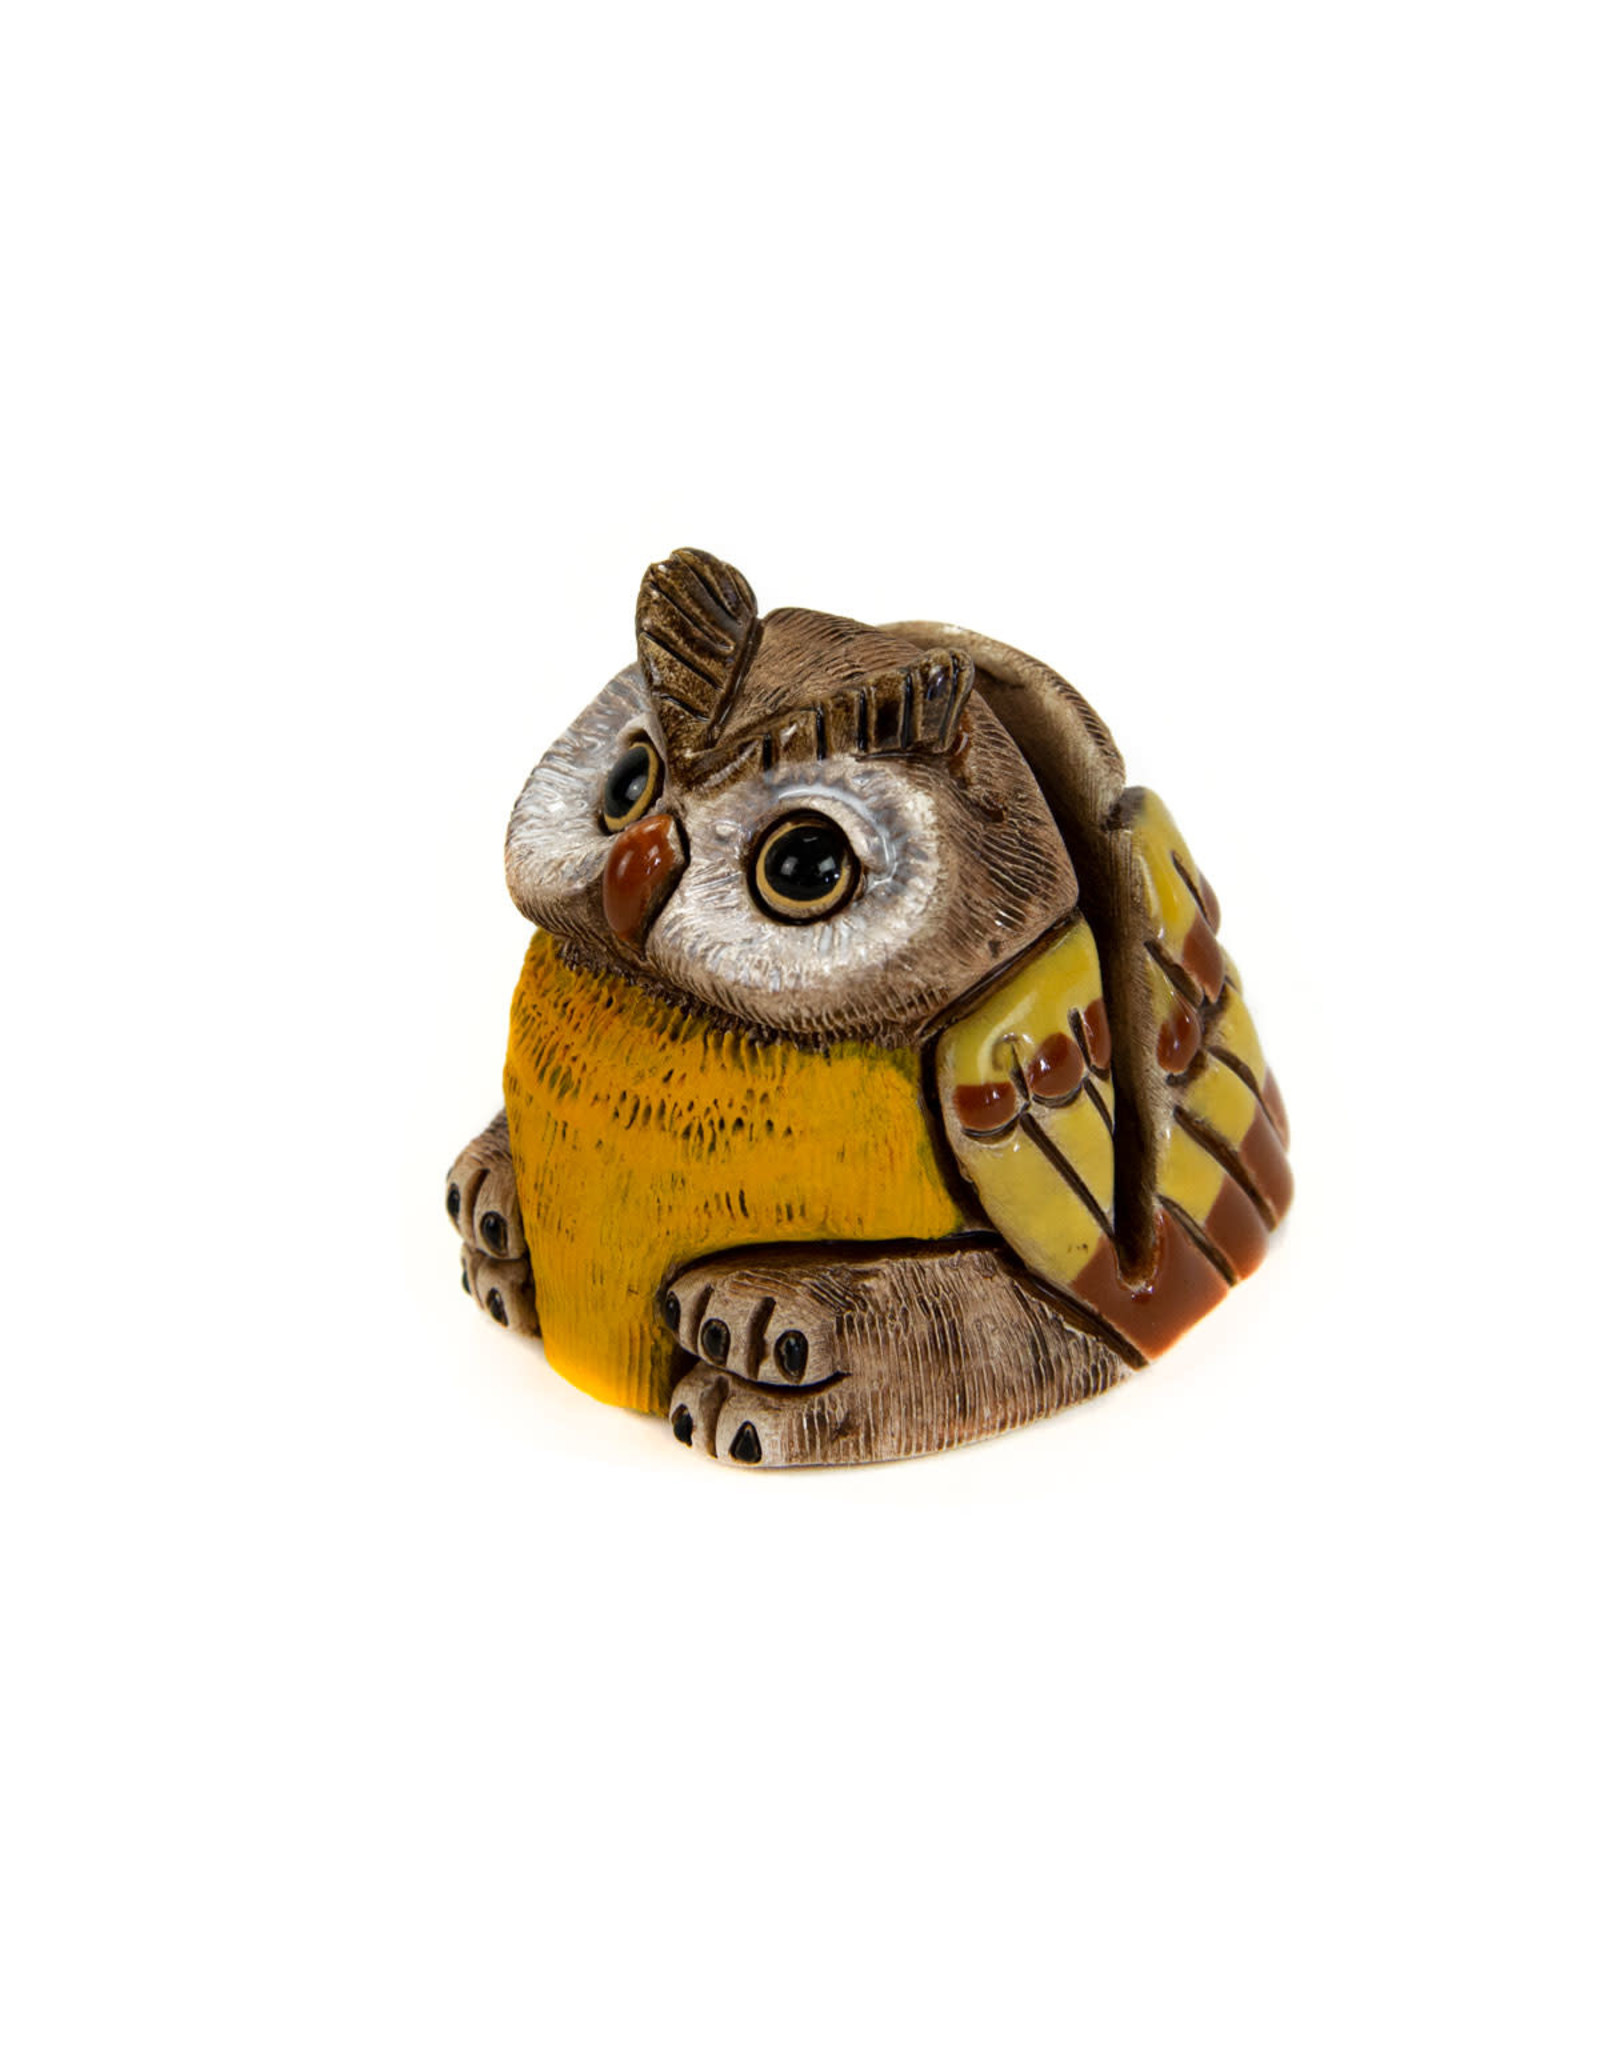 Ceramic Card Holder, Owl, Peru